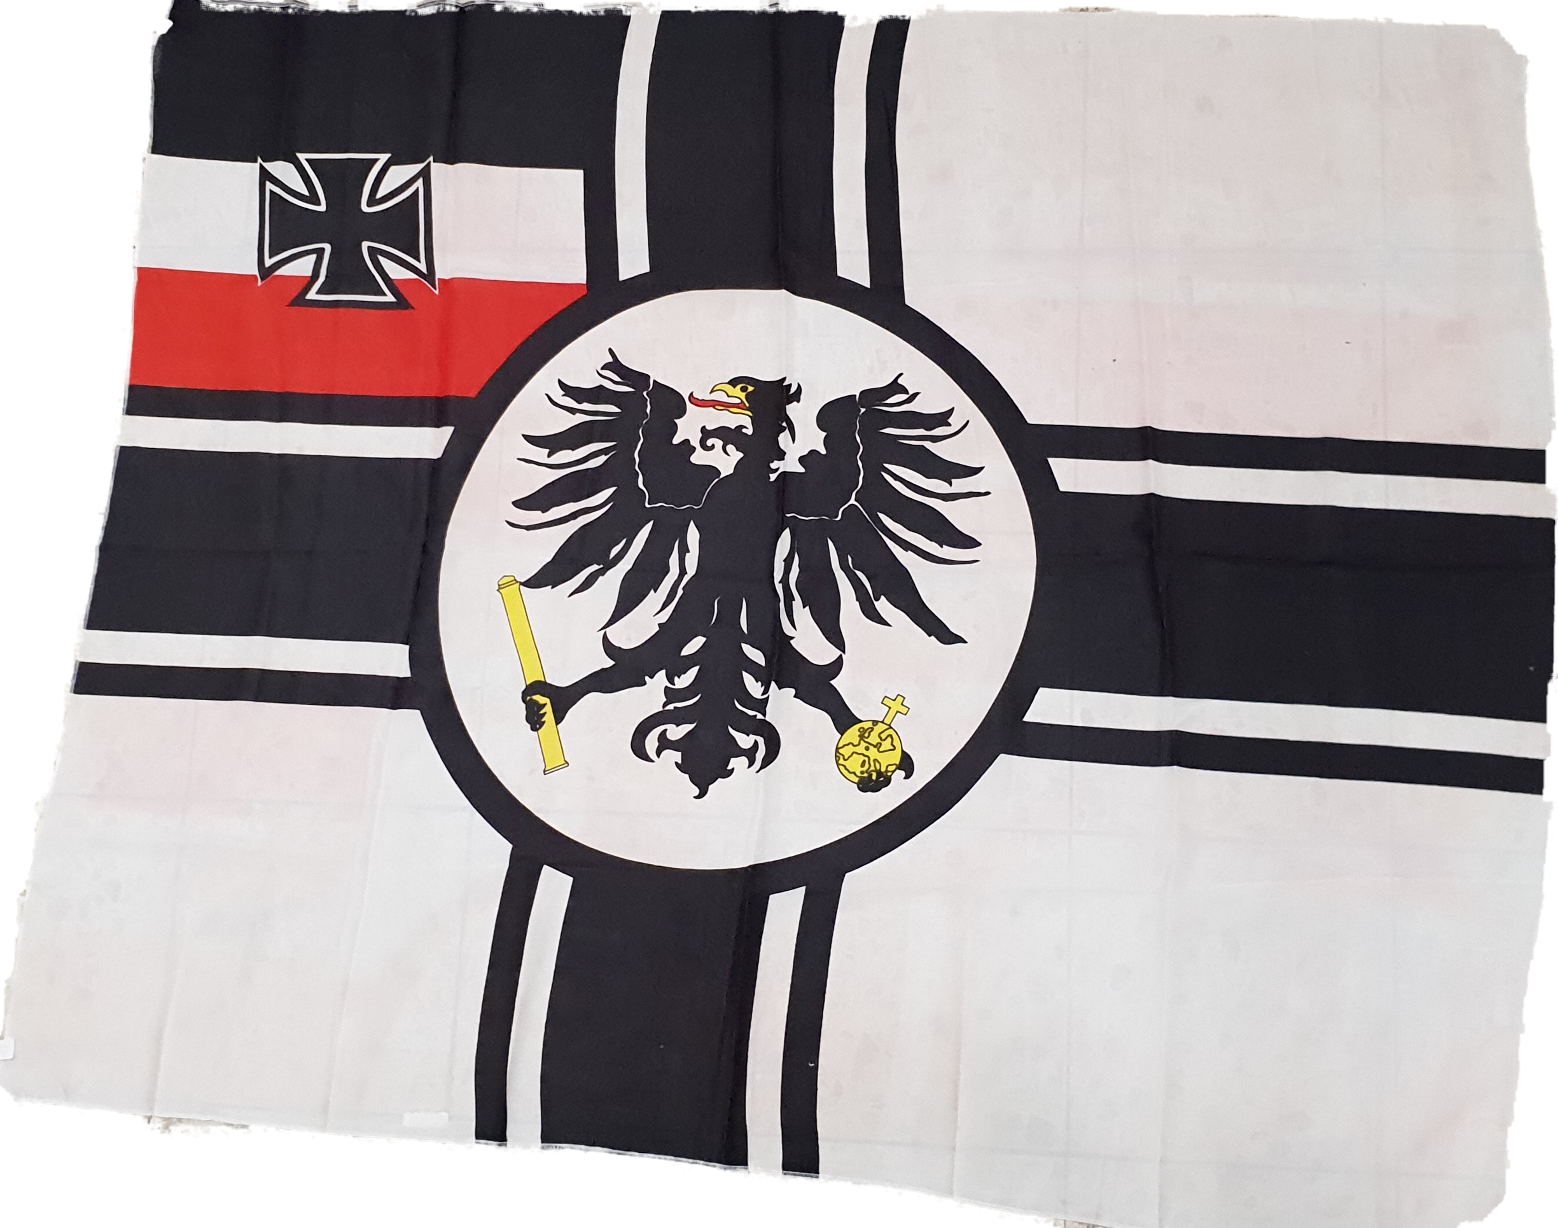 Tischflagge Deutschland Kaiserliche Marine Reichskriegsflagge RKF